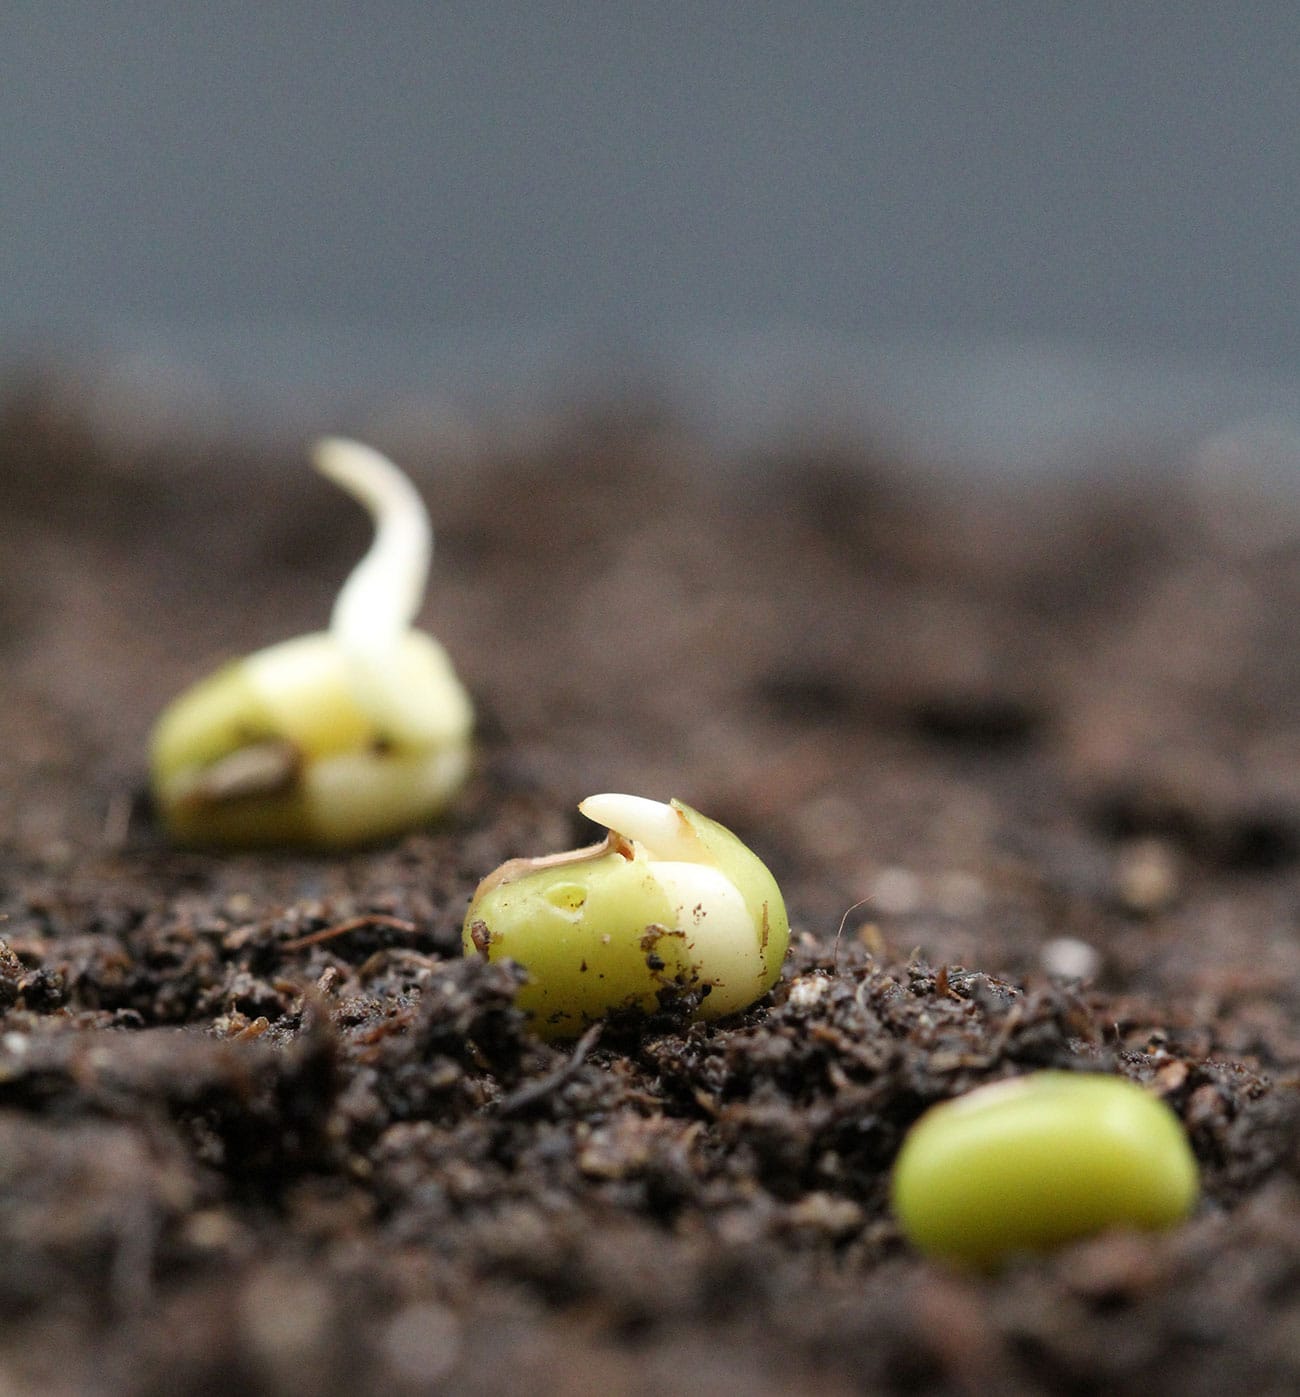 Germinating mung bean seeds. © Bettina Richter